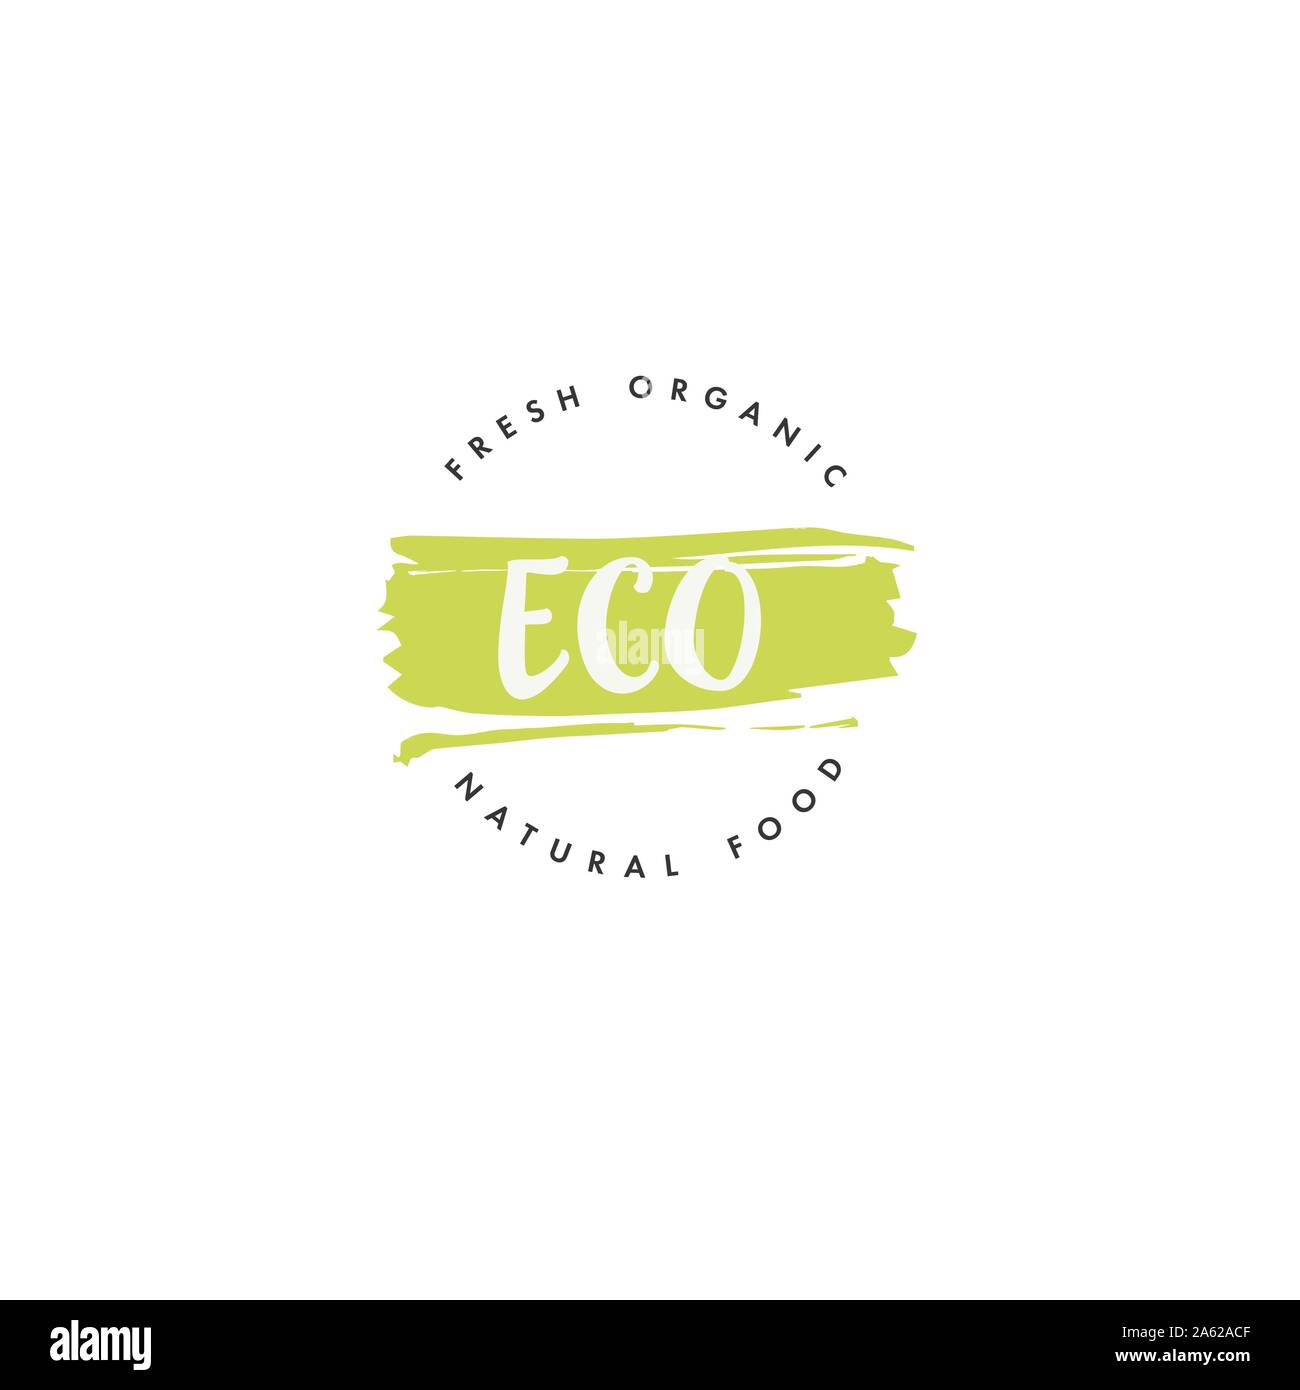 Eco-Produkt-Icons und Elemente-Kollektion für den Lebensmittelmarkt, E-Commerce, Bio-Produkte Förderung, gesundes Leben und hochwertige Lebensmittel und Getränke. Stock Vektor